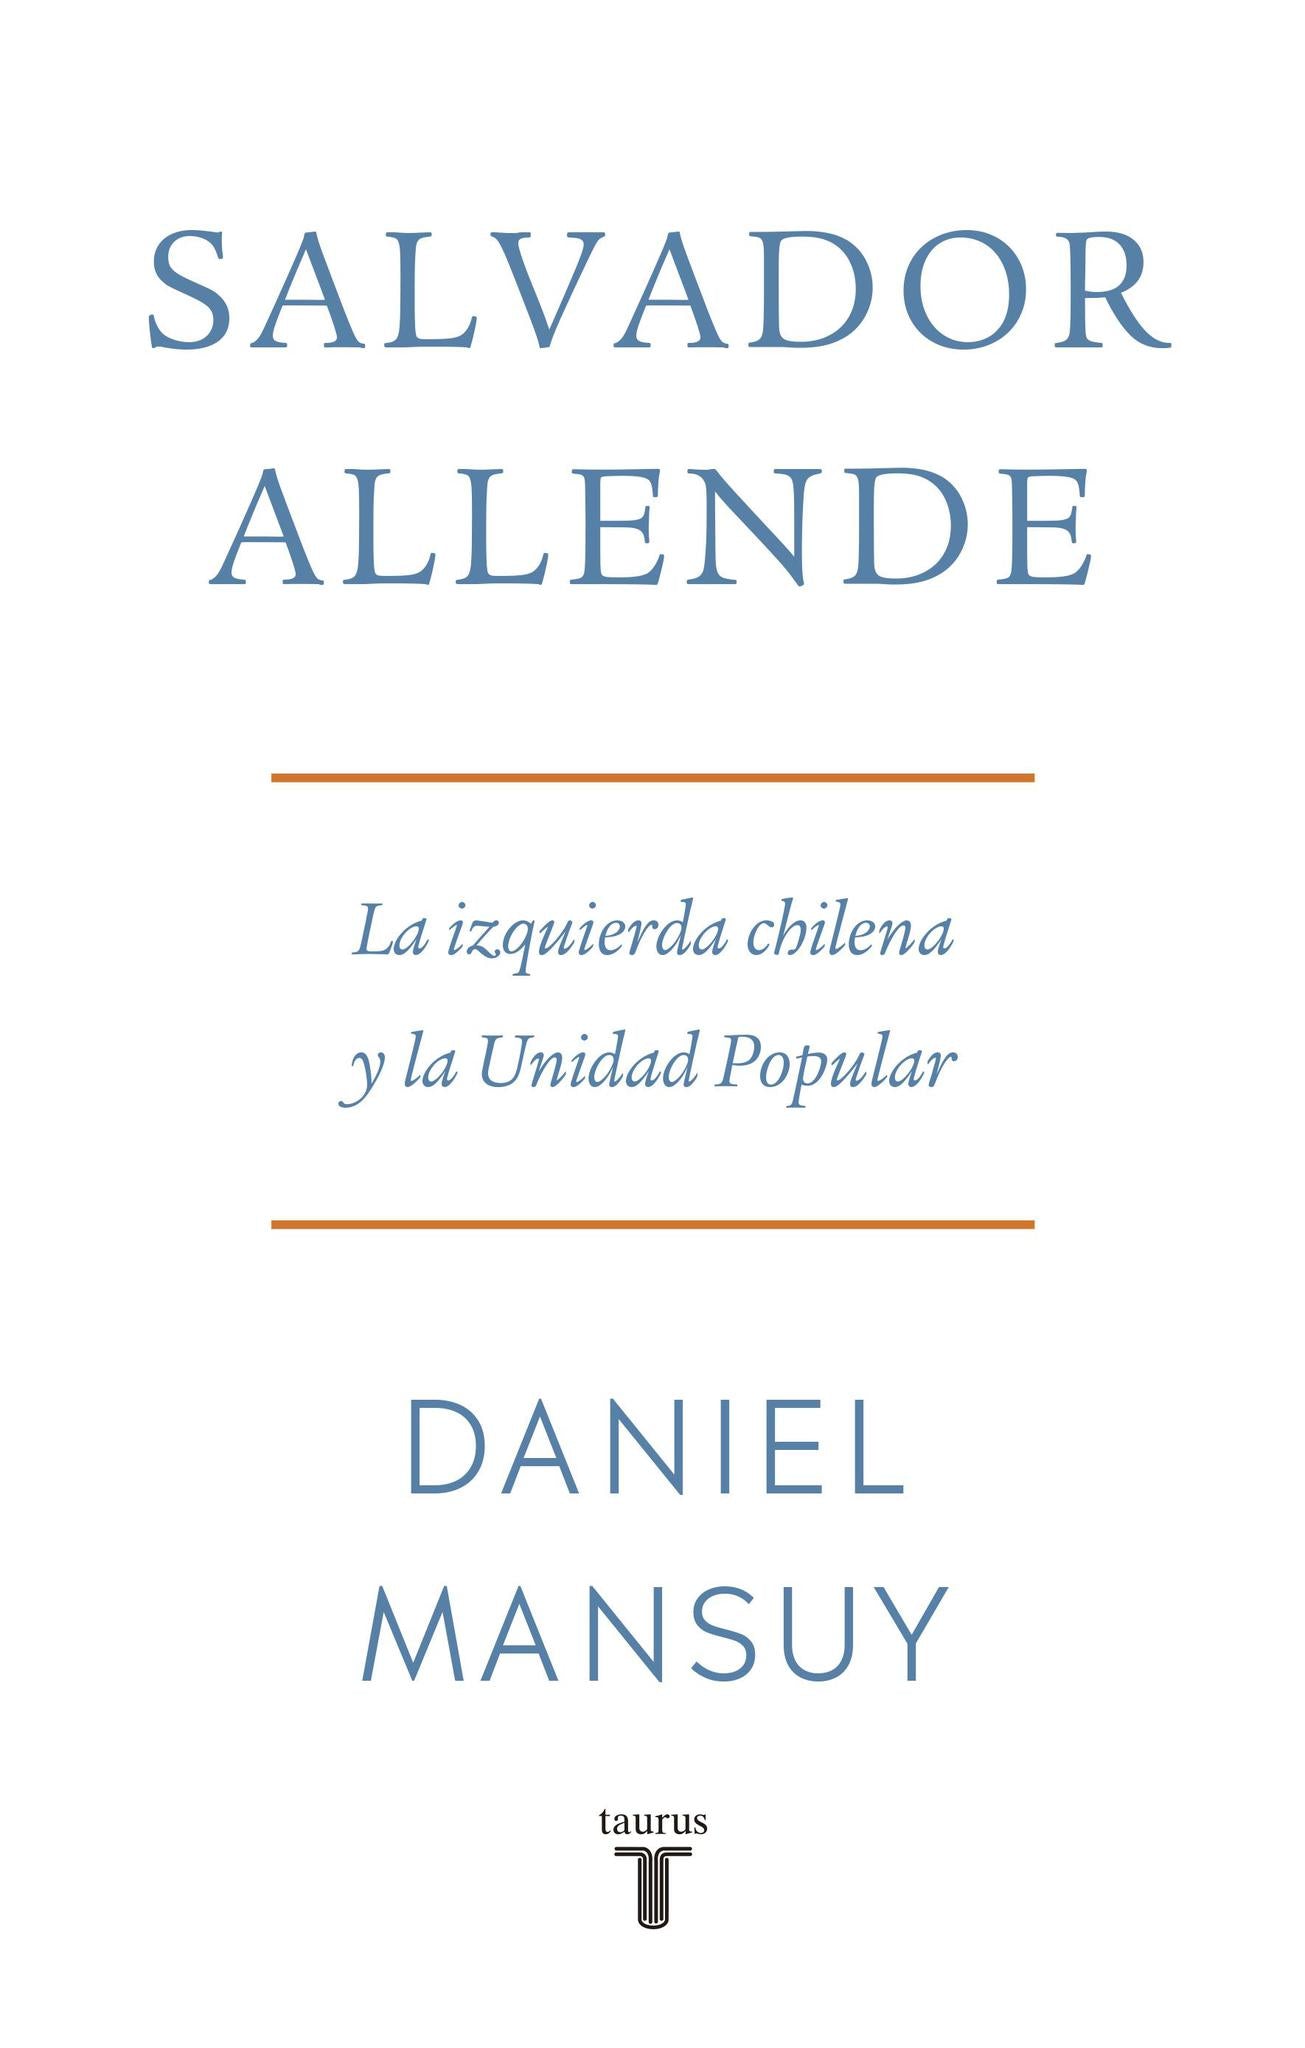 Salvador Allende - Daniel Mansuy